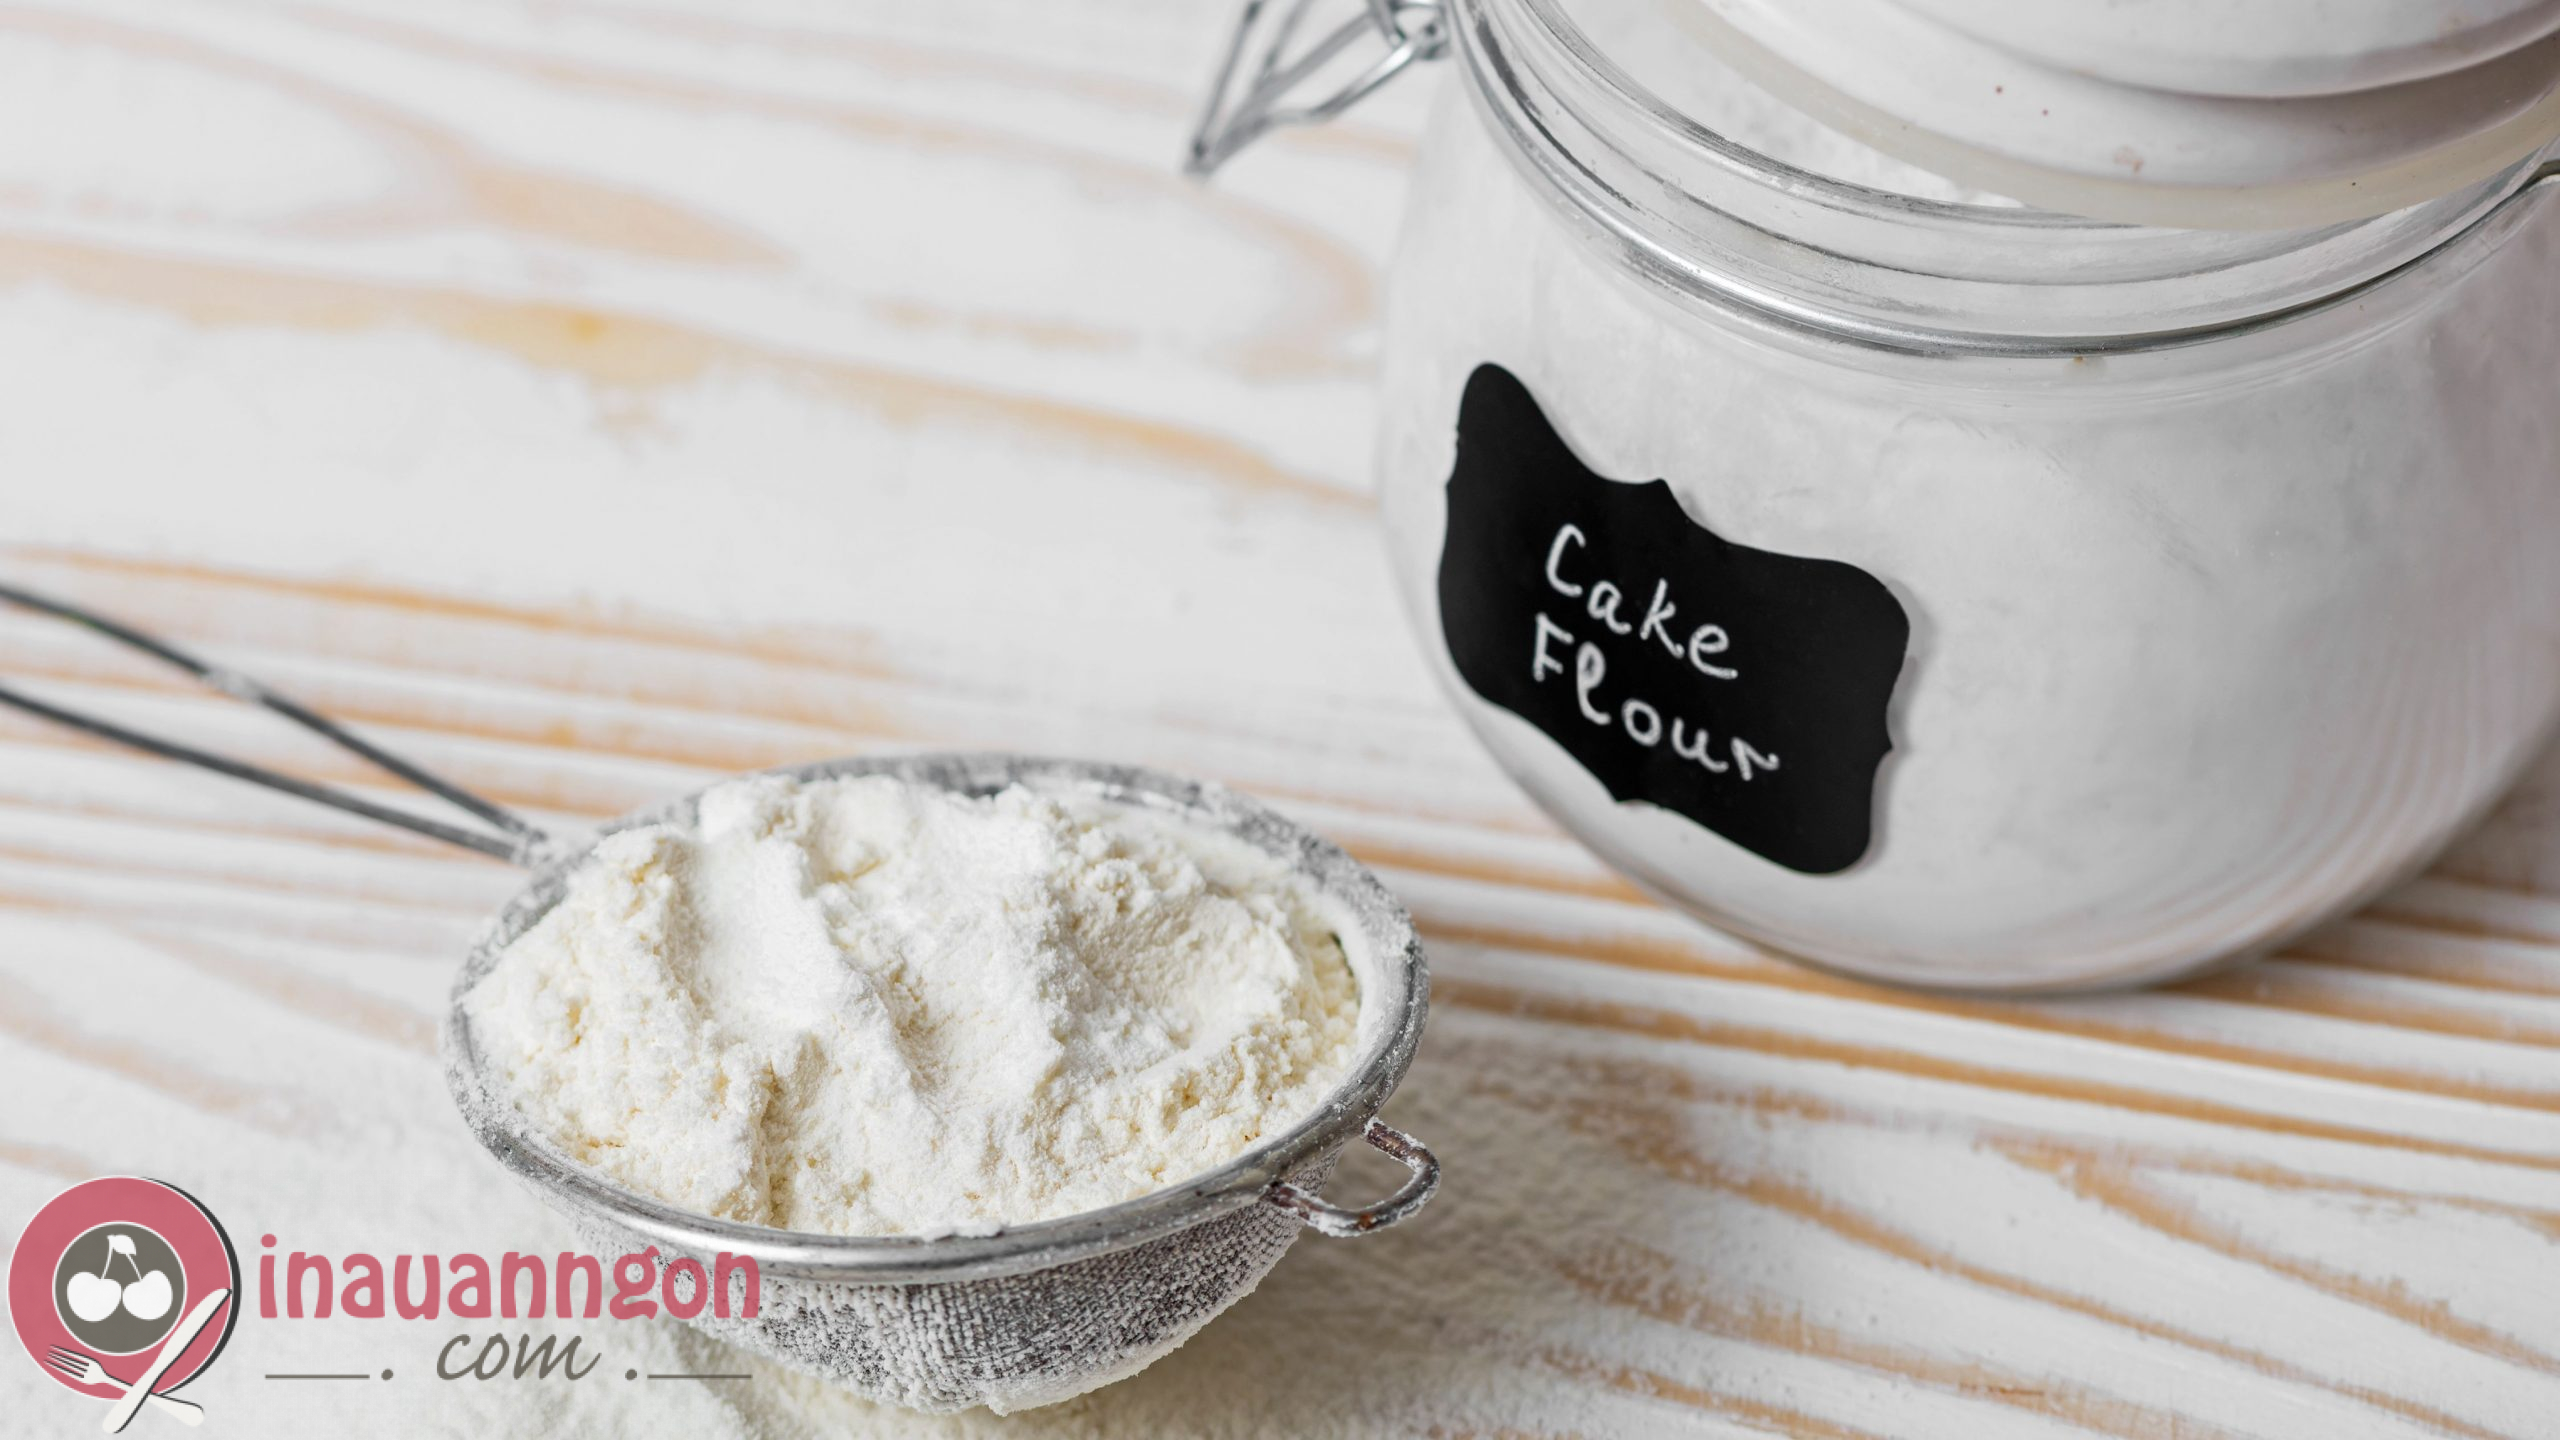 Cake flour hay còn được biết đến với bột mì số 8 